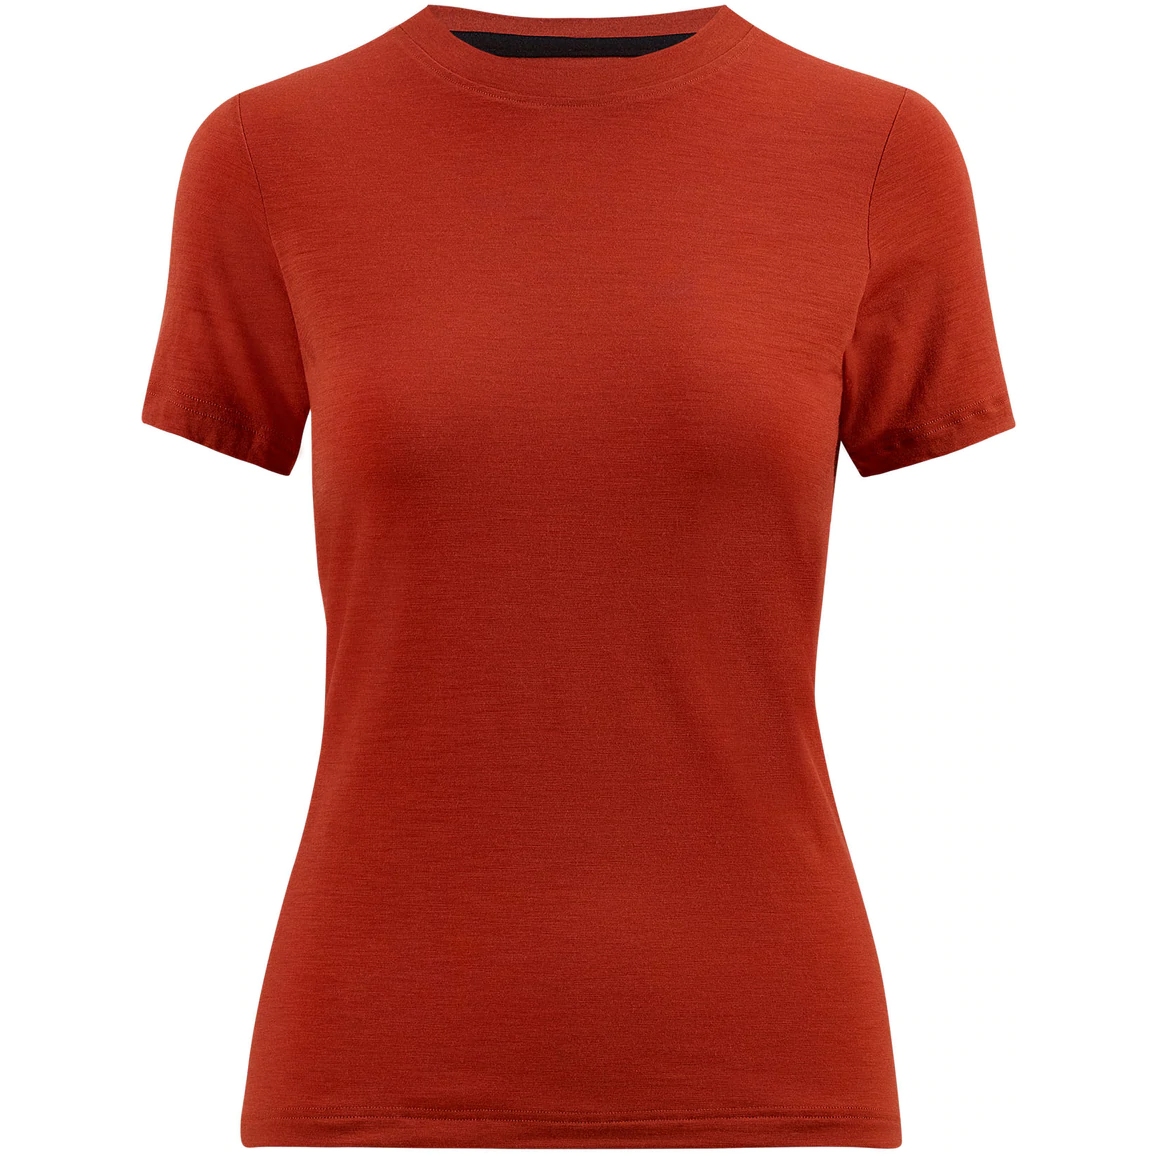 Produktbild von Velocio Merino Trail Damen T-Shirt - Rust